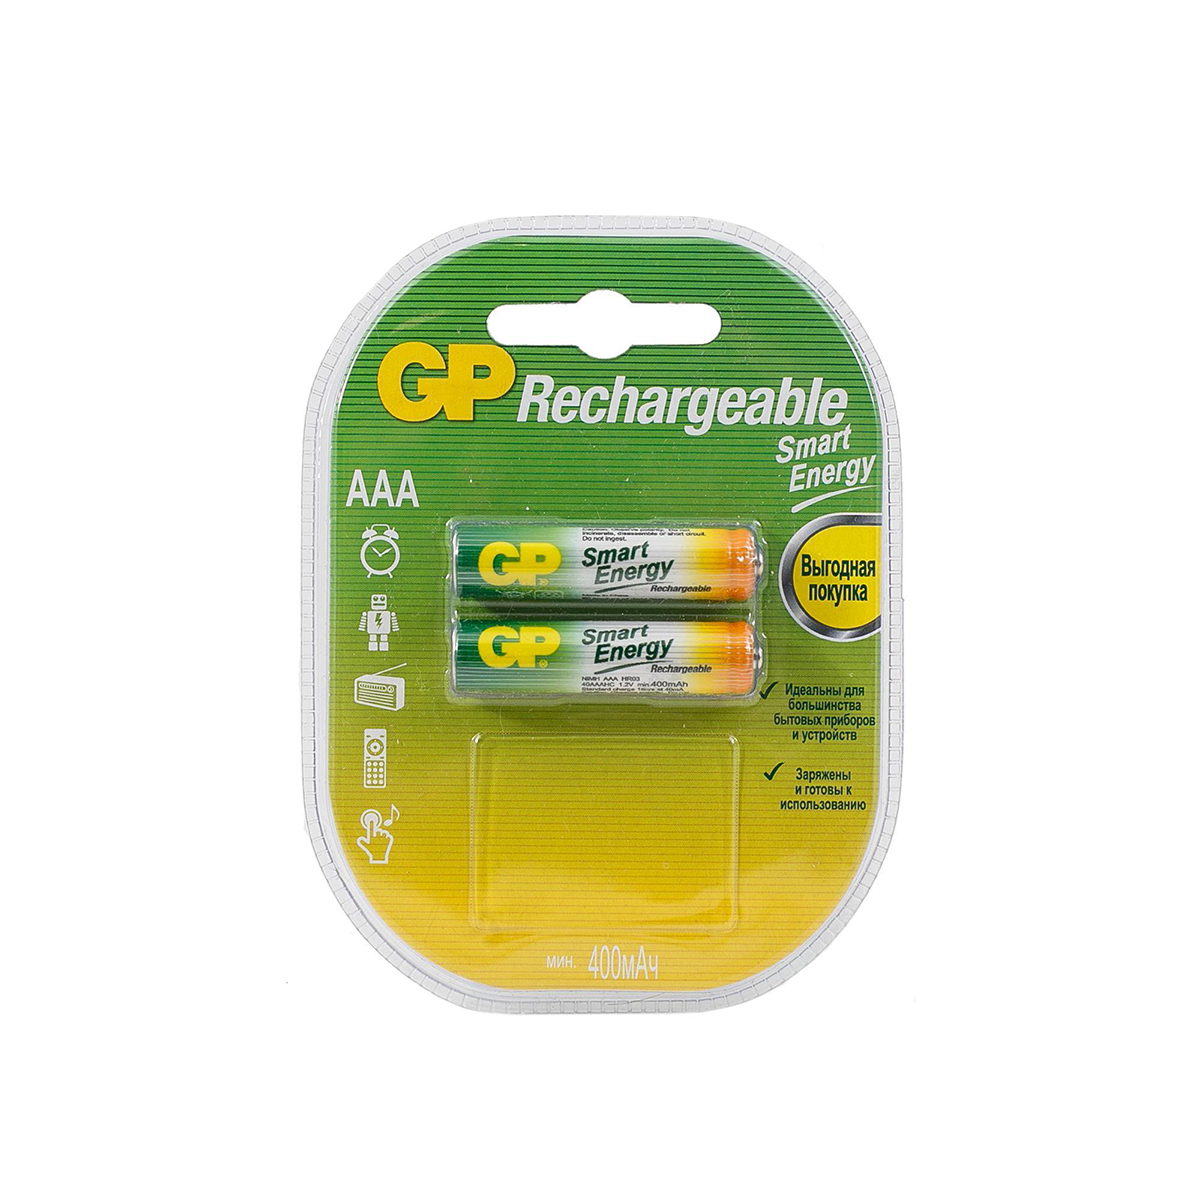 Аккумулятор gp rechargeable 40aaahcsv-2cr2  тип ааа, 400 мач (2 шт. в блистере) (1/10/100)